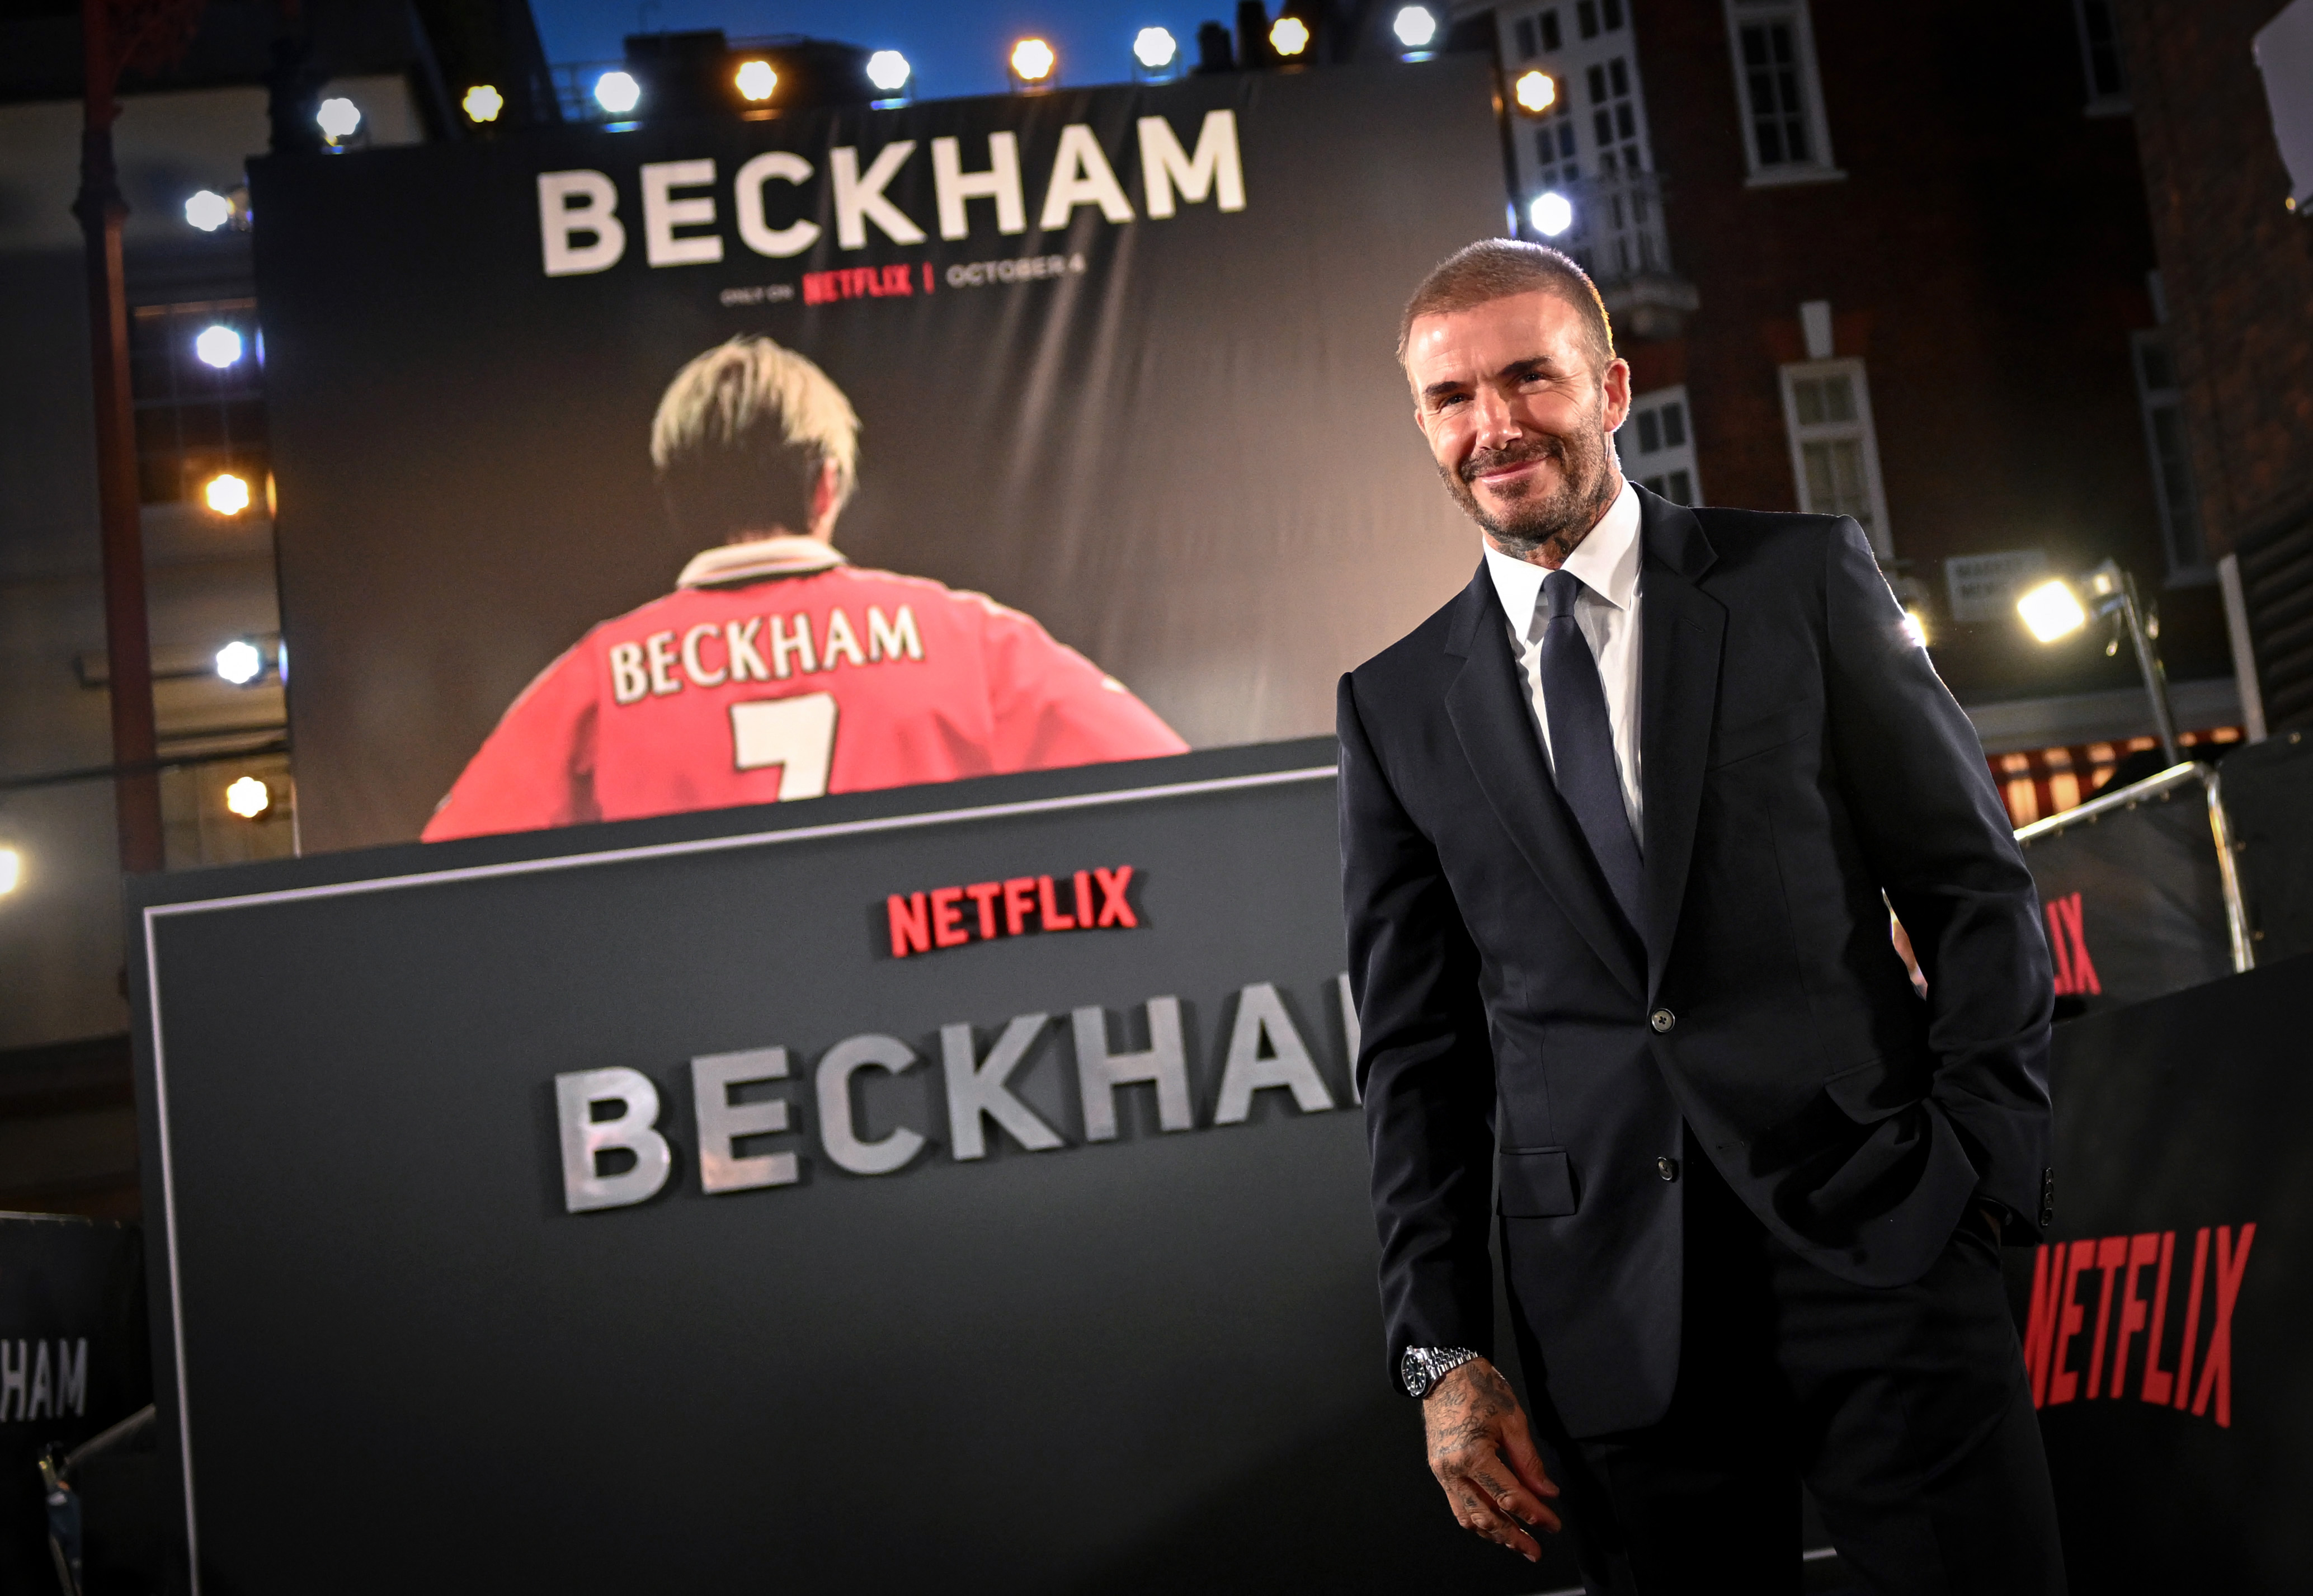 Tin chuyển nhượng trưa 10/10: Beckham xác nhận sở hữu Man Utd? Messi cập bến giải đấu của Ronaldo